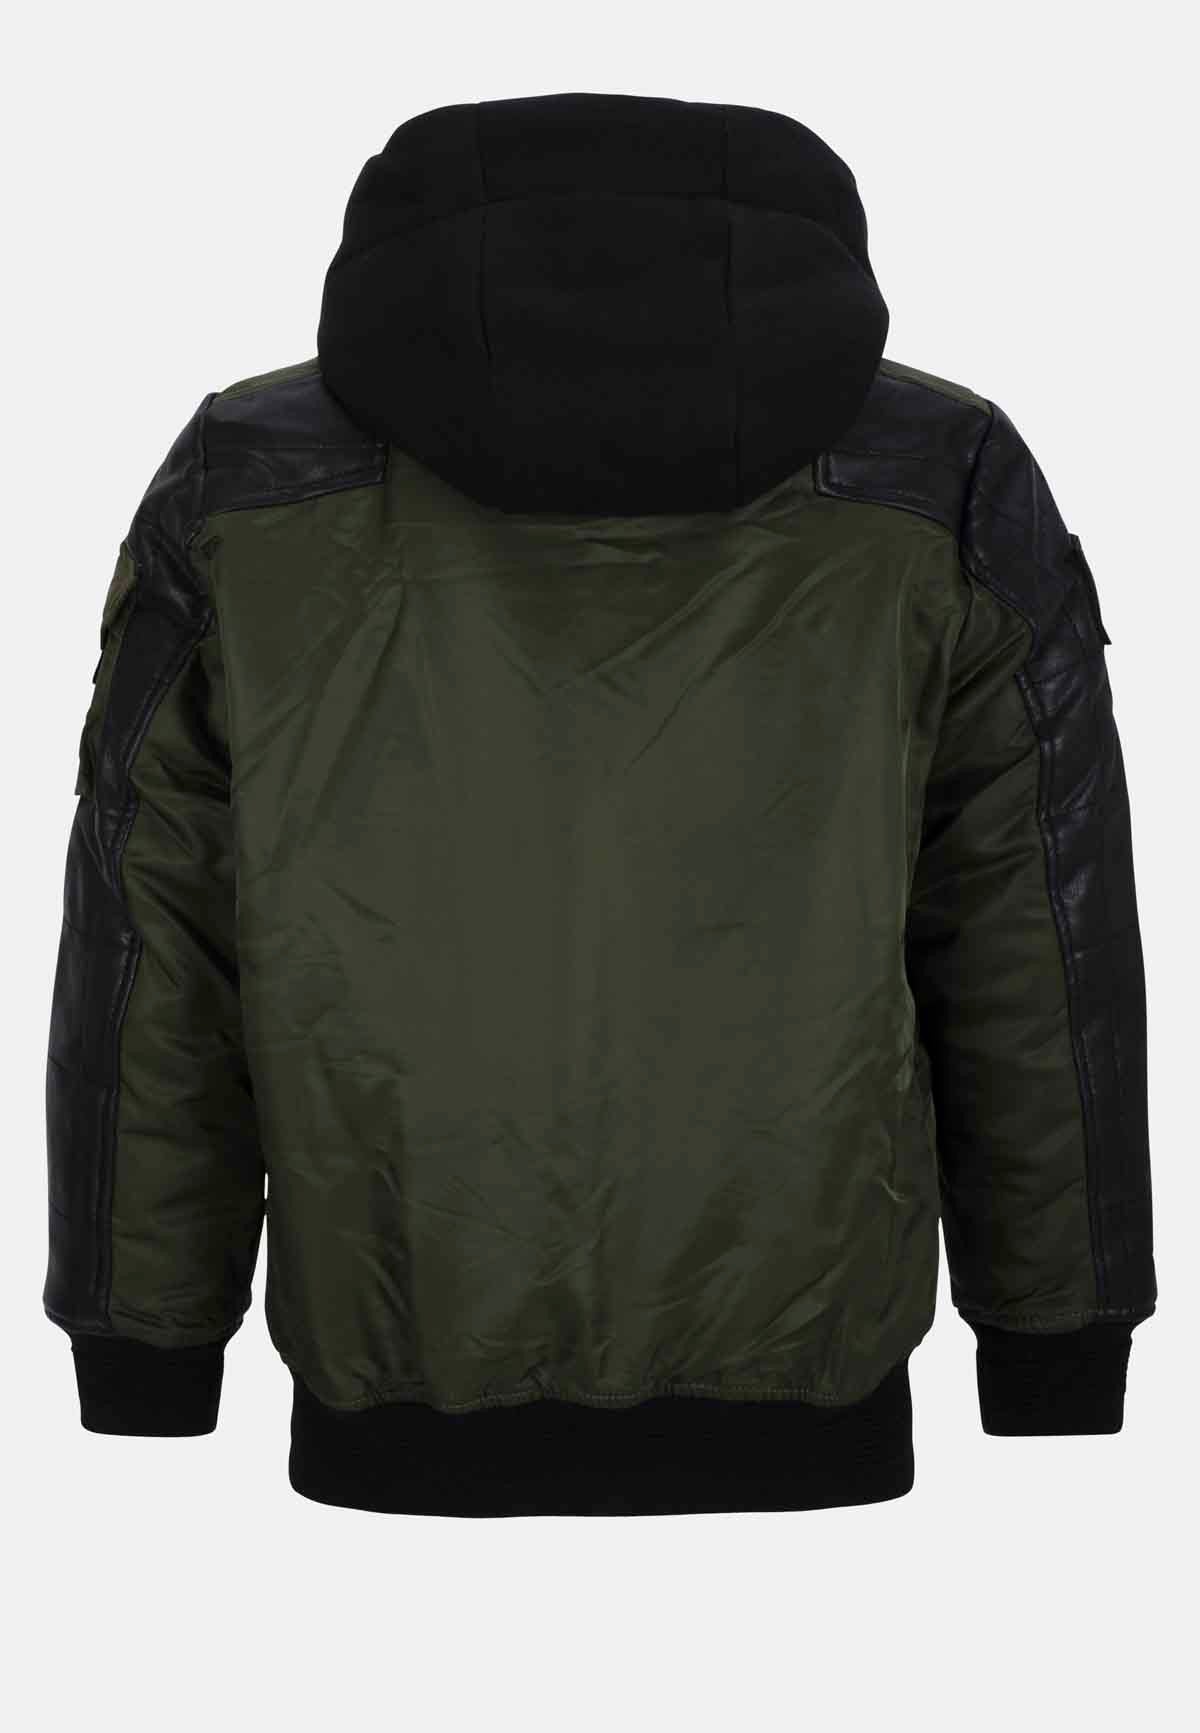 CMK101 chaqueta joven negra